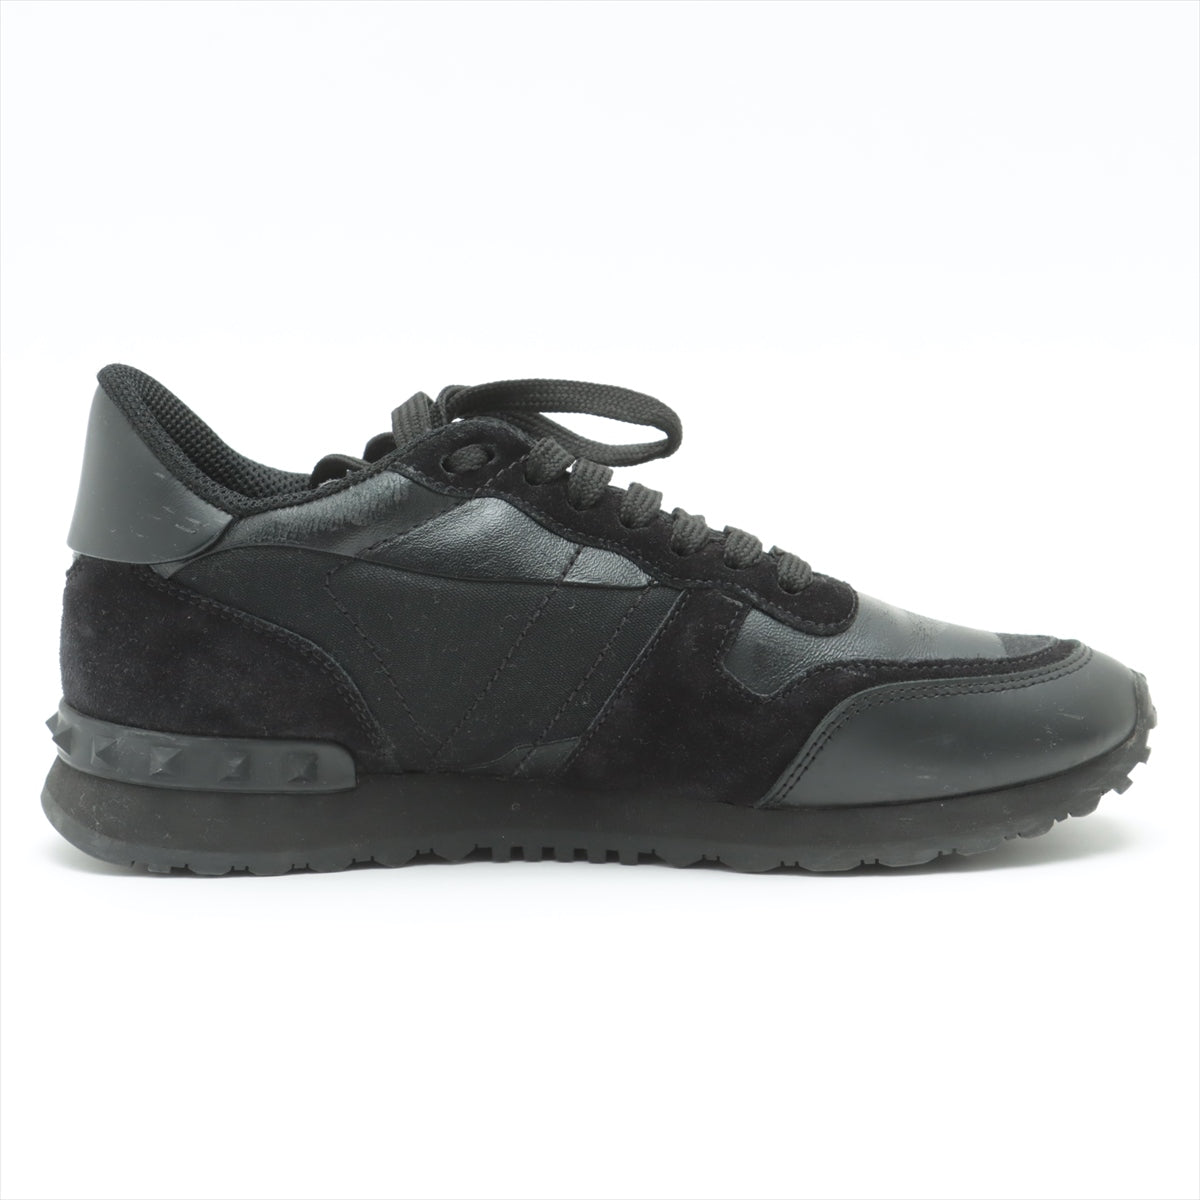 Valentino Garavani Leather & Suede Sneakers 37 Ladies' Black TU291W2 Rock Studs